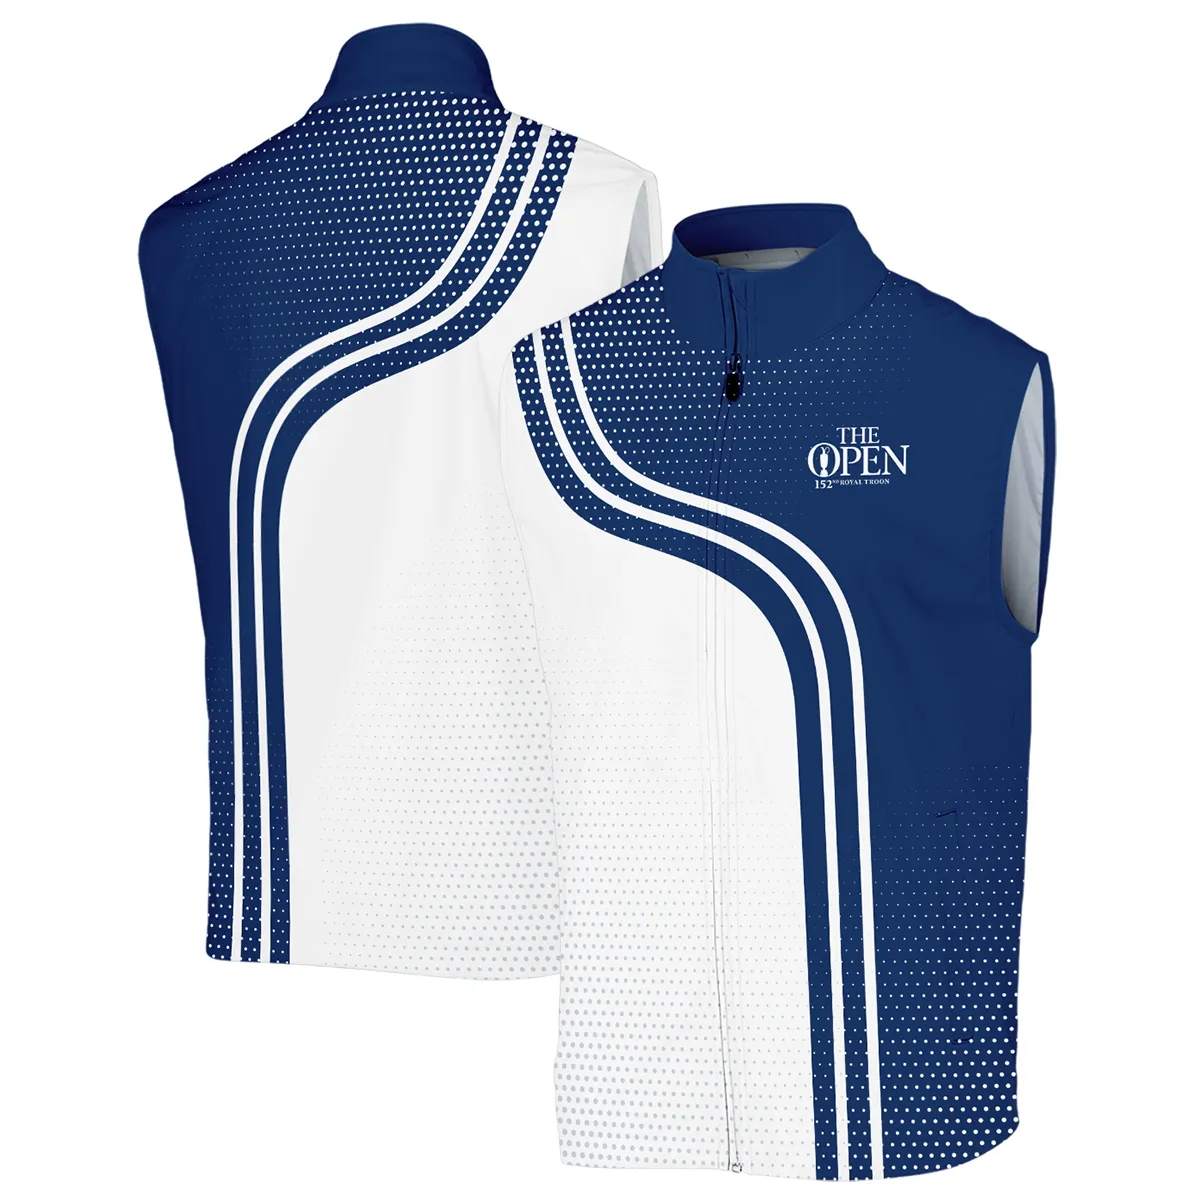 Golf Blue Mix White Sport 152nd Open Championship Pinehurst Titleist Zipper Hoodie Shirt All Over Prints QTTOP1806A1TLZHD